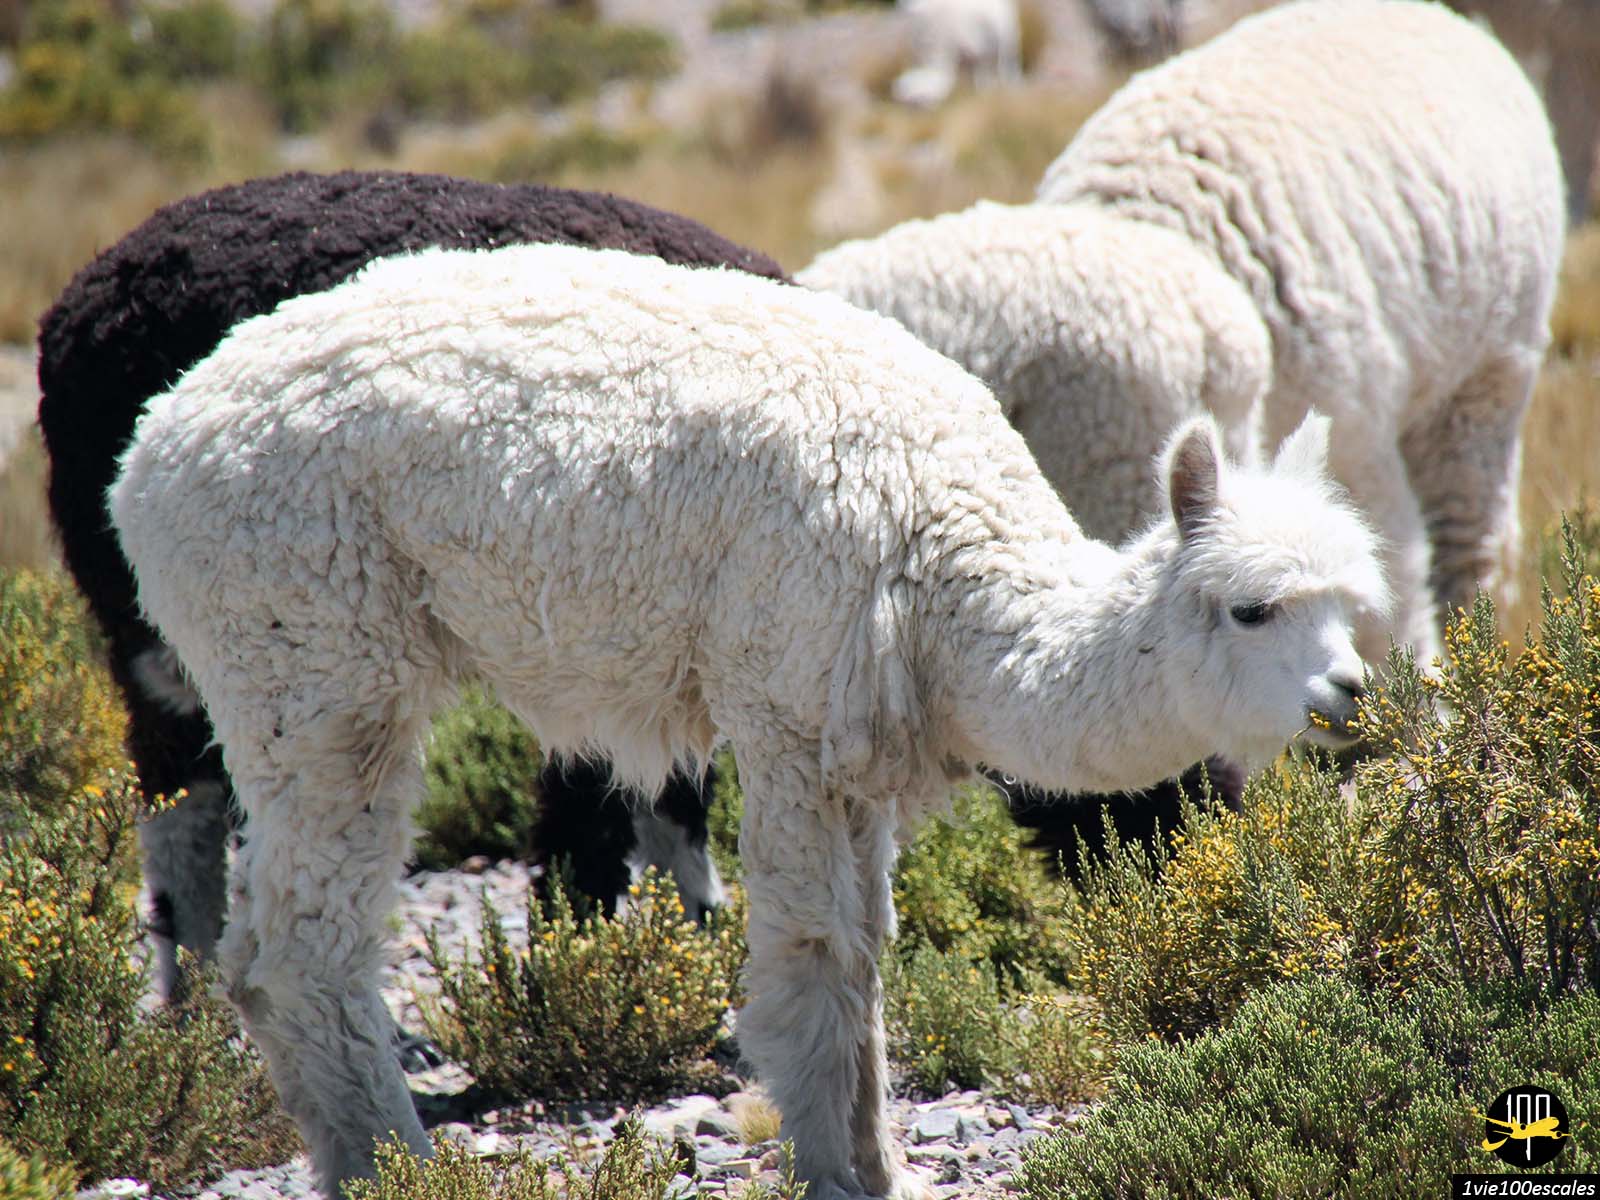 L'altiplano est située entre 3600m et 5000m d'altitude.C'est la zone où vivent les lamas, alpagas et vigognes